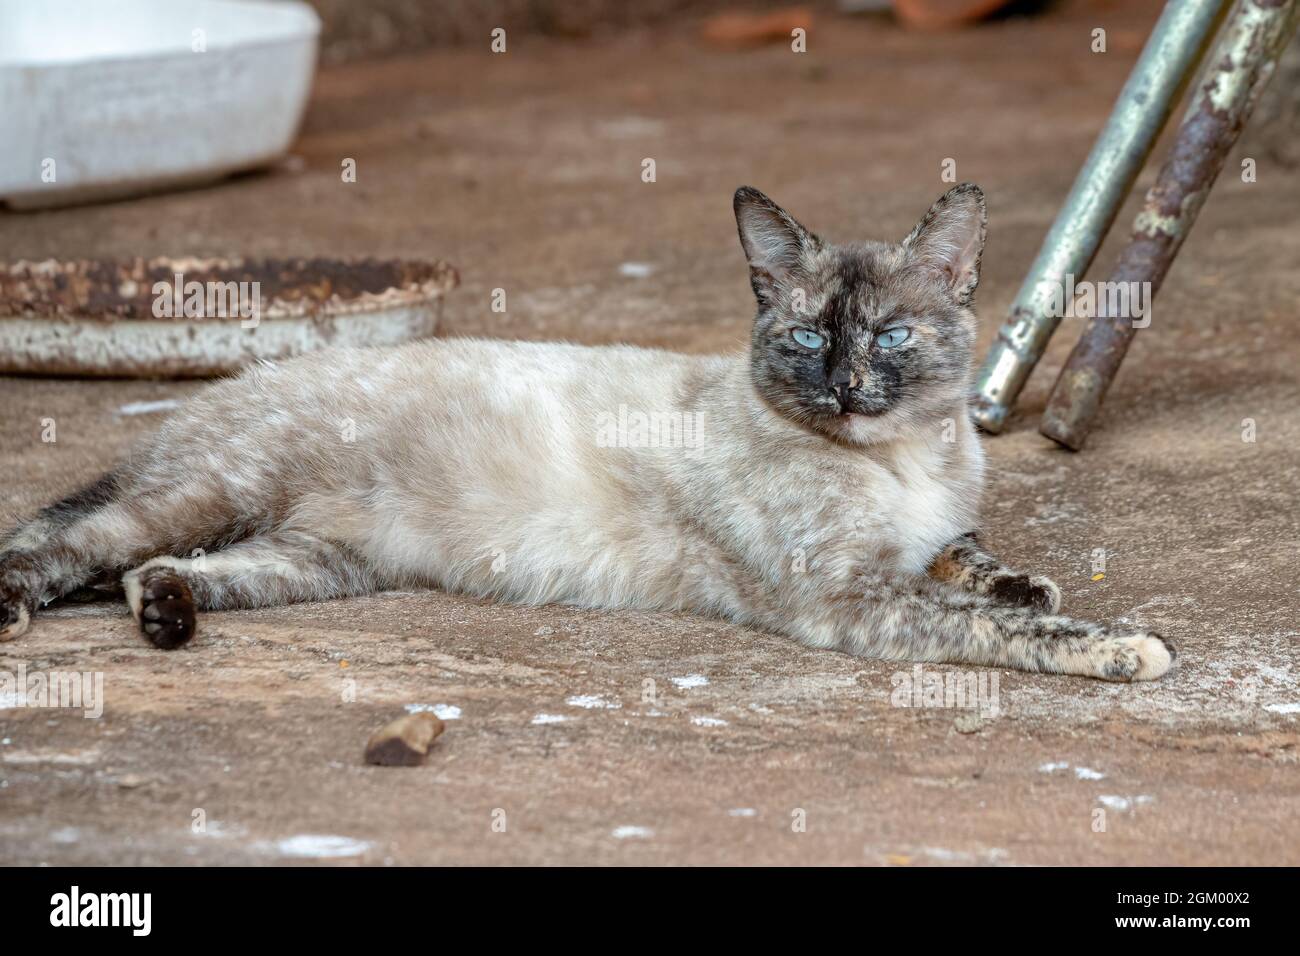 Gato doméstico salvaje abandonado en cementerio con enfoque selectivo Foto de stock